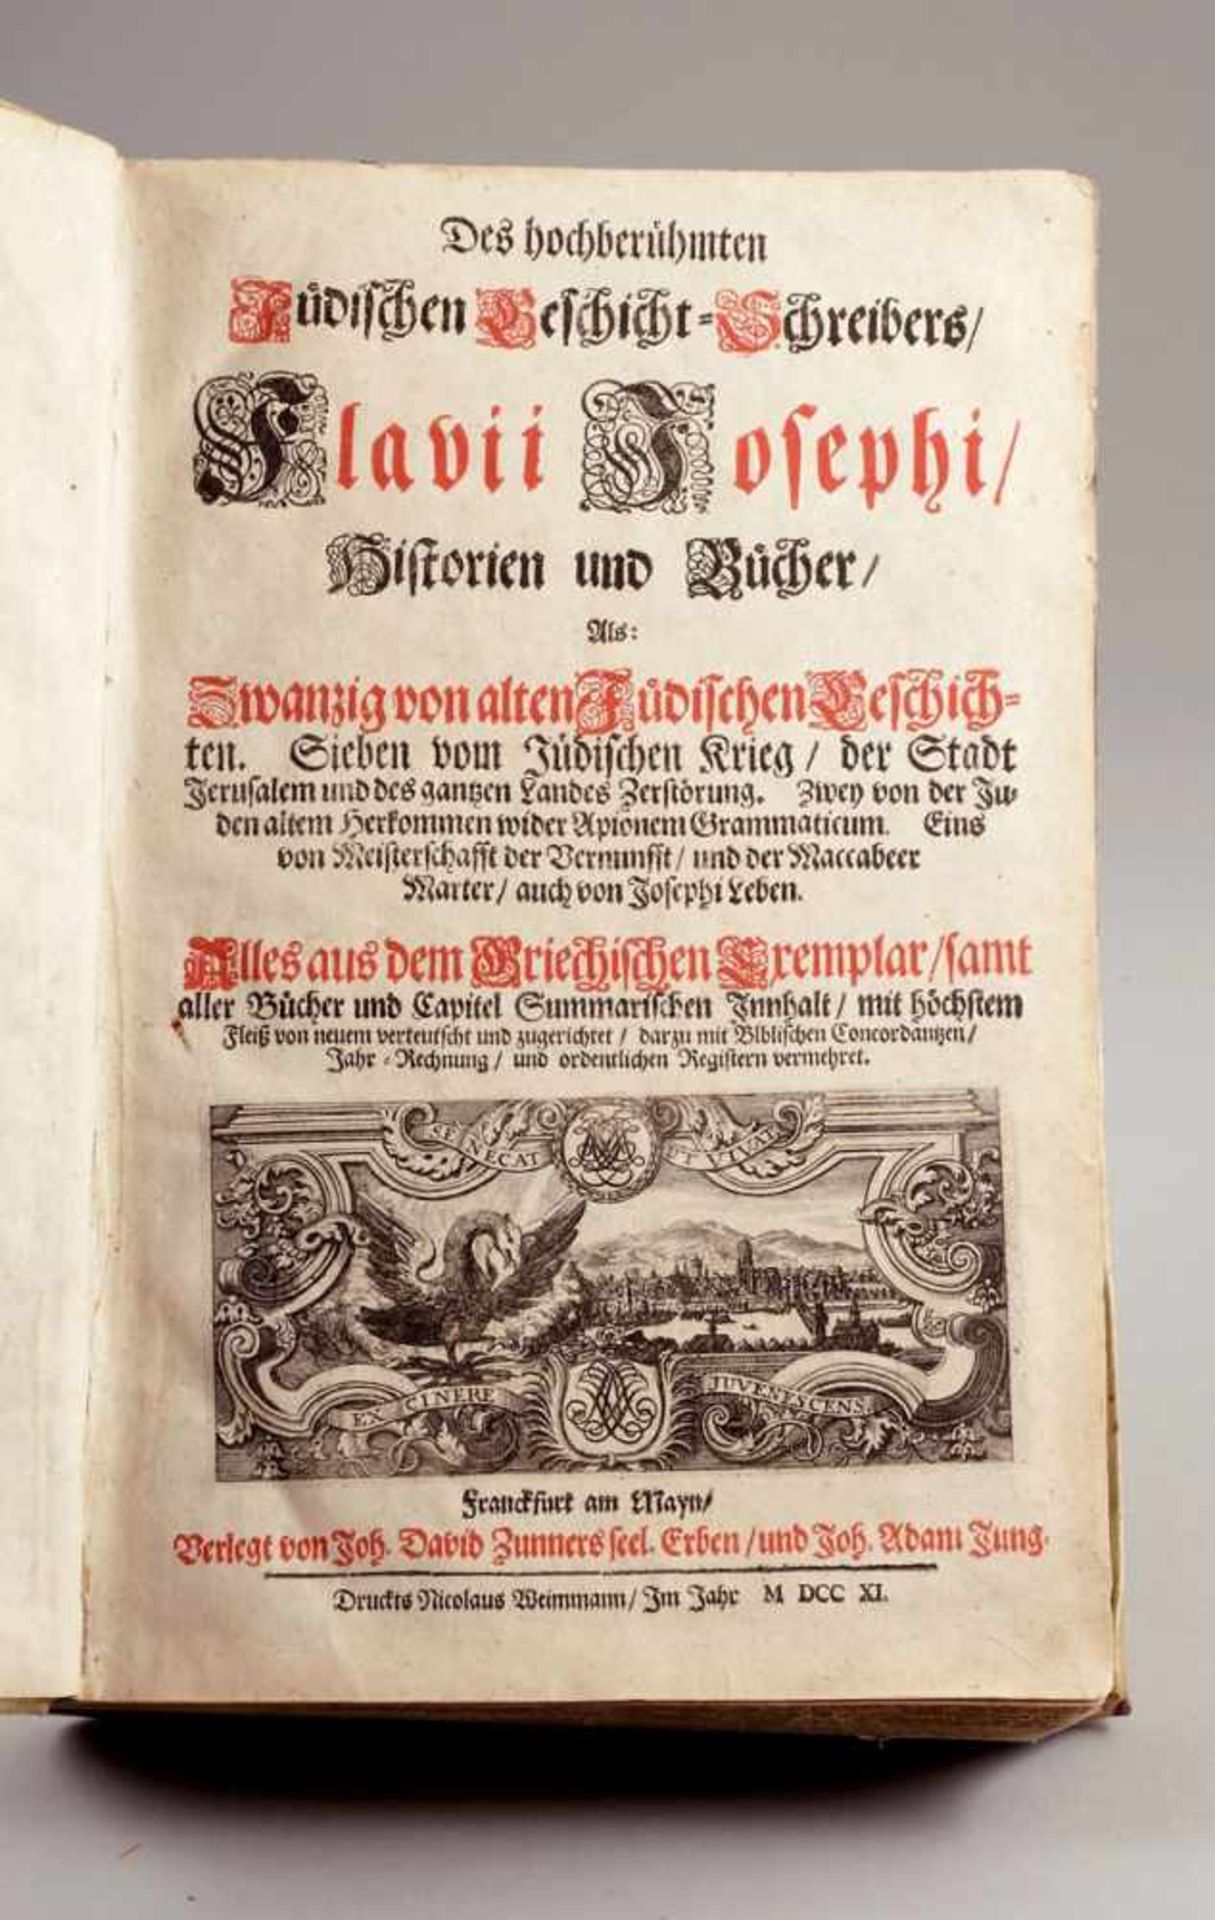 Flavius Josephus- "Des hochberühmten Jüdischen Geschicht=Schreibers Flavii Josephi Historien und - Image 2 of 2